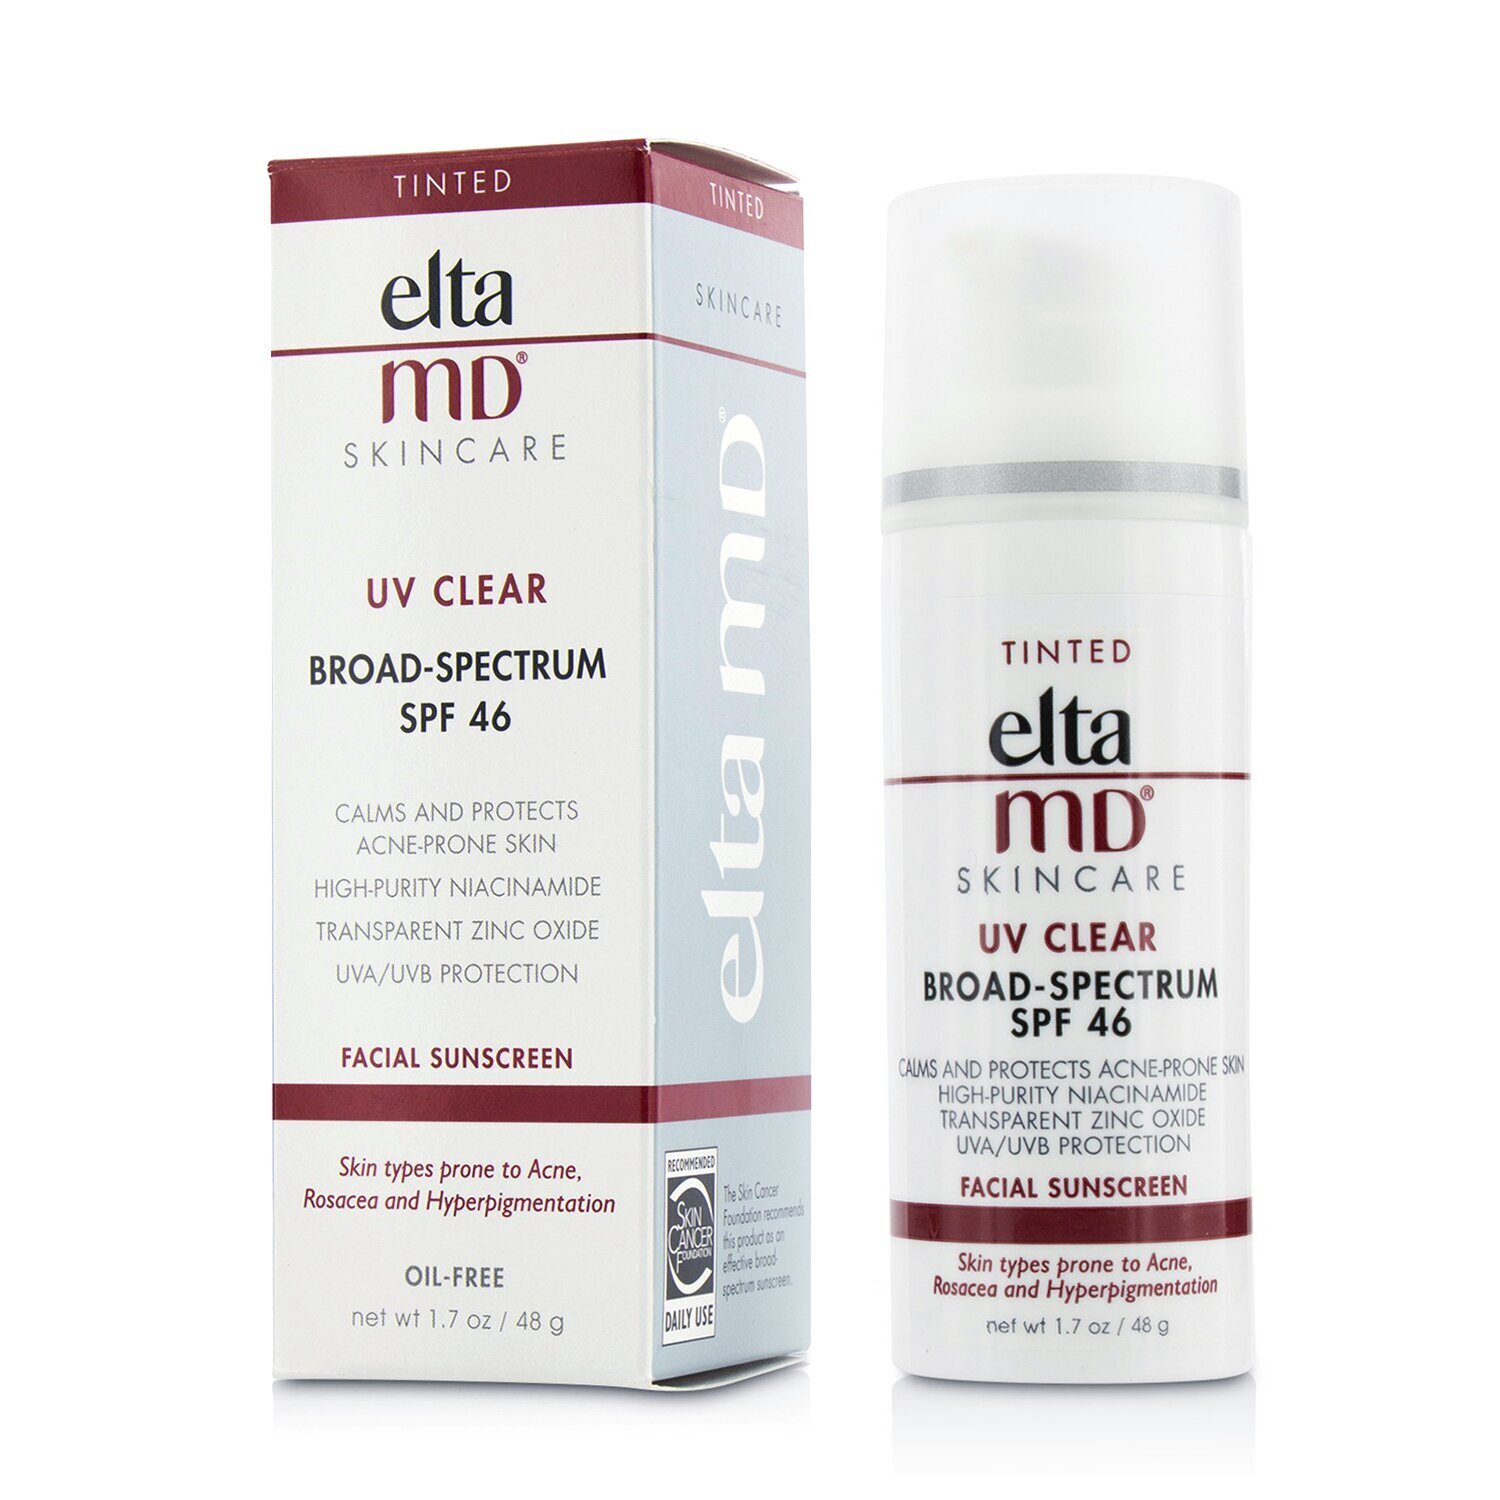 創新專業保養品 EltaMD - 可麗防曬霜 SPF 46 (適合易生粉刺, 玫瑰斑或膚色不均的肌膚) - 潤色